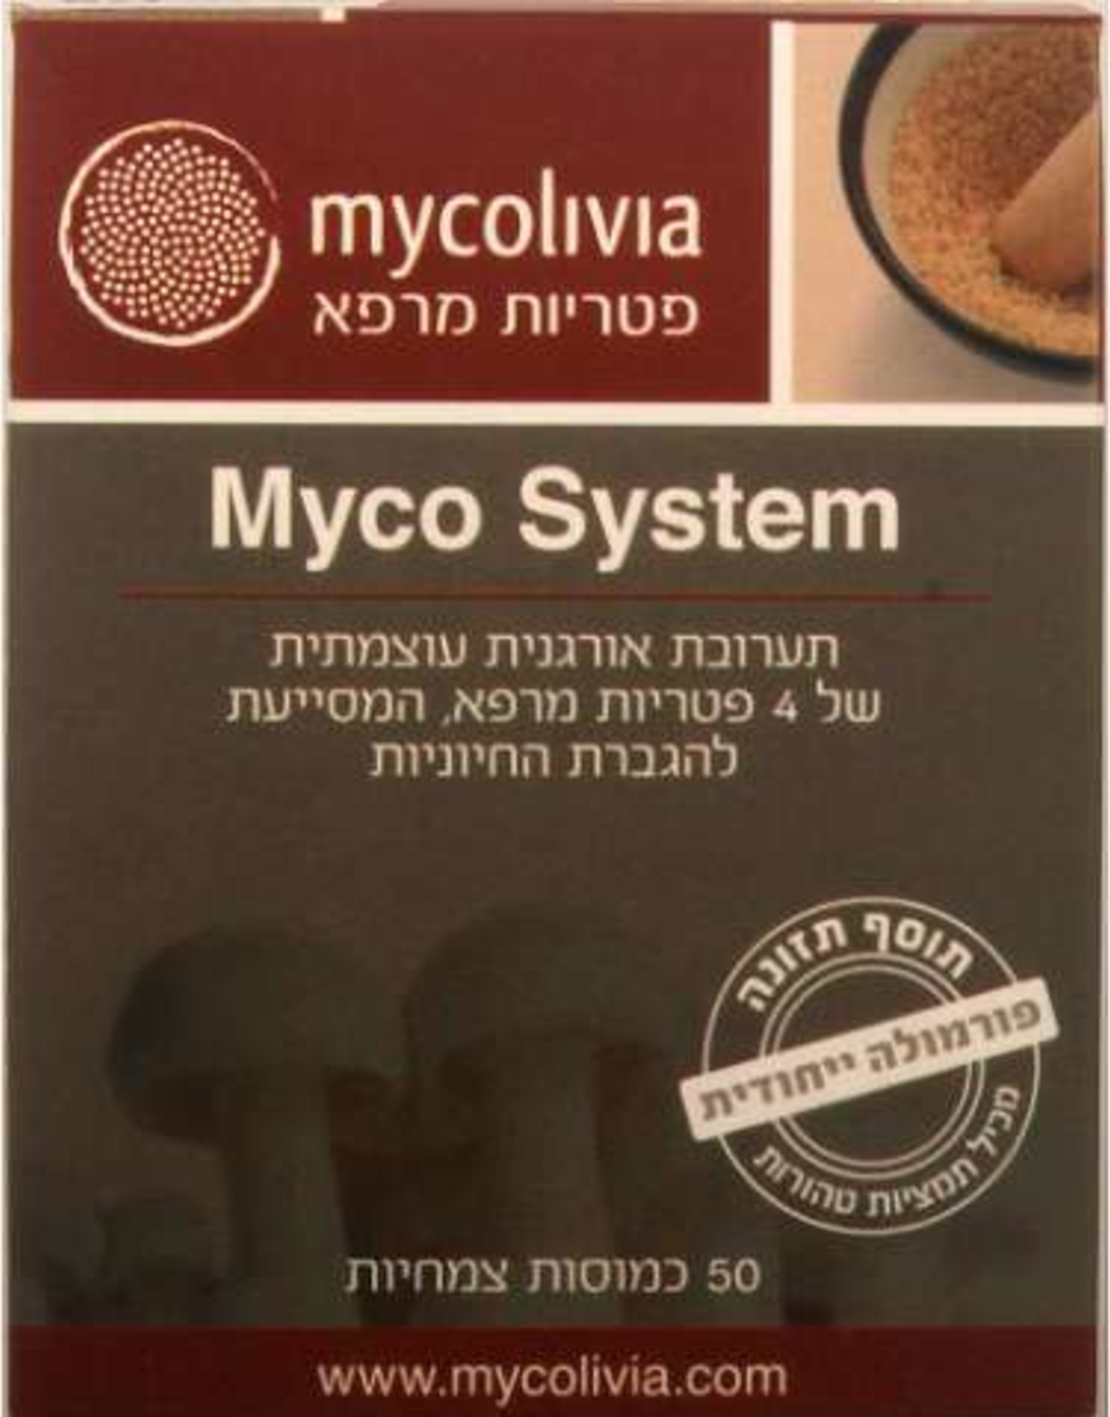 מיקו סיסטם - שילוב פטריות מרפא Myco System